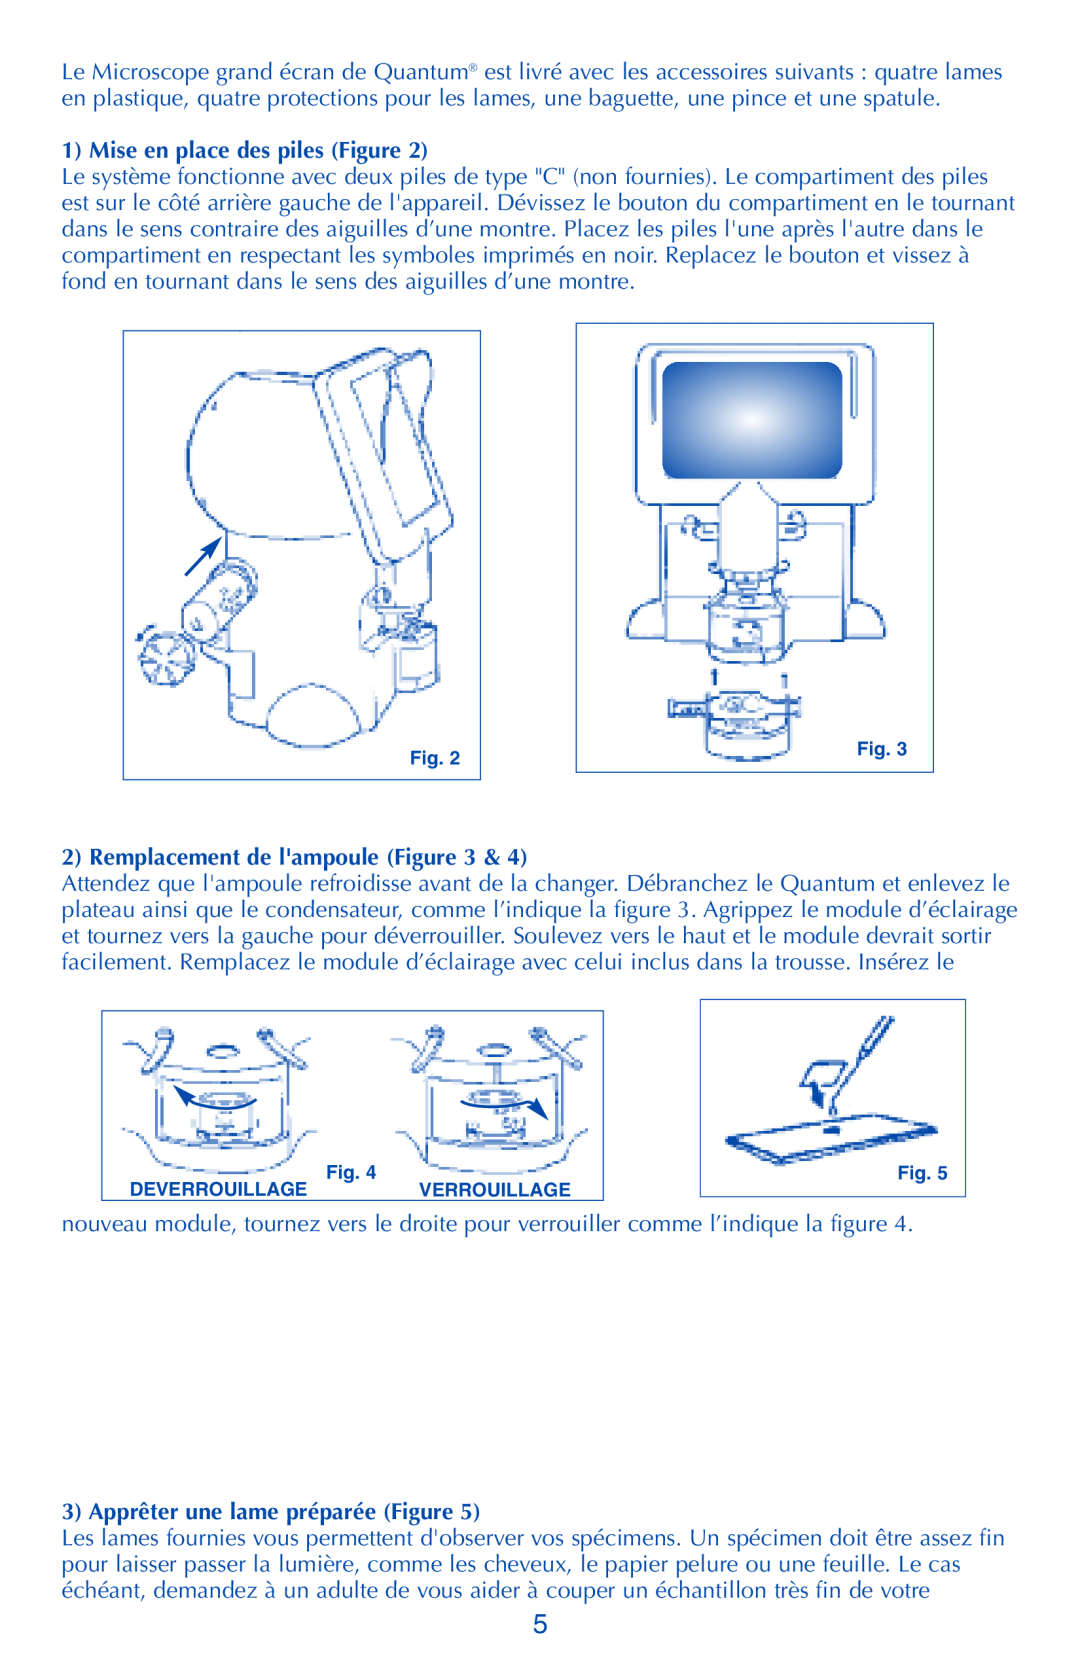 Quantum LER 2900 manual Mise en place des piles Figure, Remplacement de lampoule, Apprêter une lame préparée Figure 